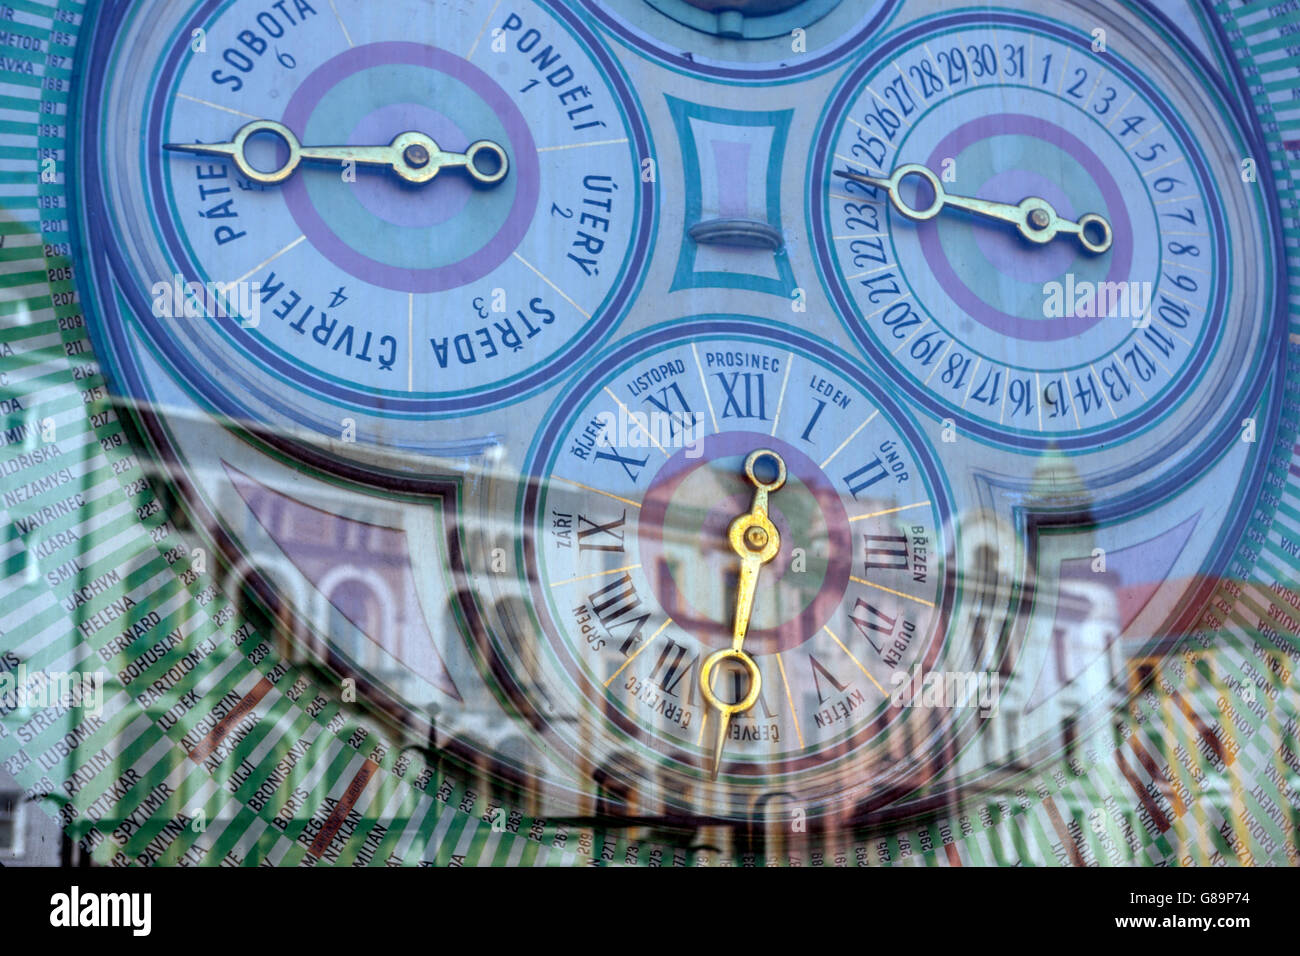 Die astronomische Uhr. Wählscheiben und Zeitanzeigen. Olomouc, Südmähren, Tschechien, Europa große Uhren Stockfoto